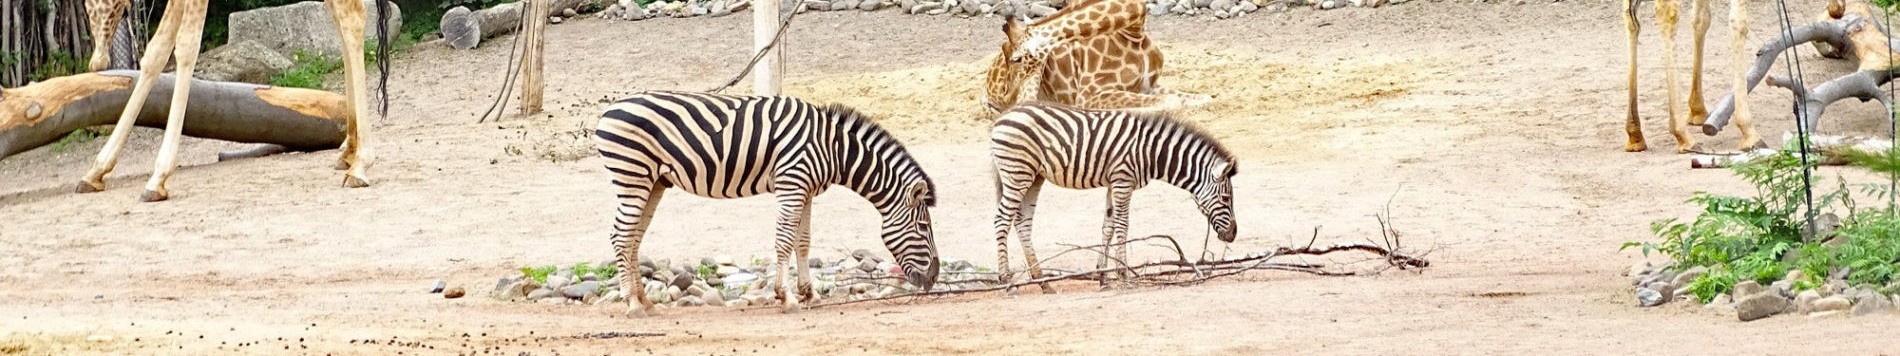 Zebras in the outdoor enclosure